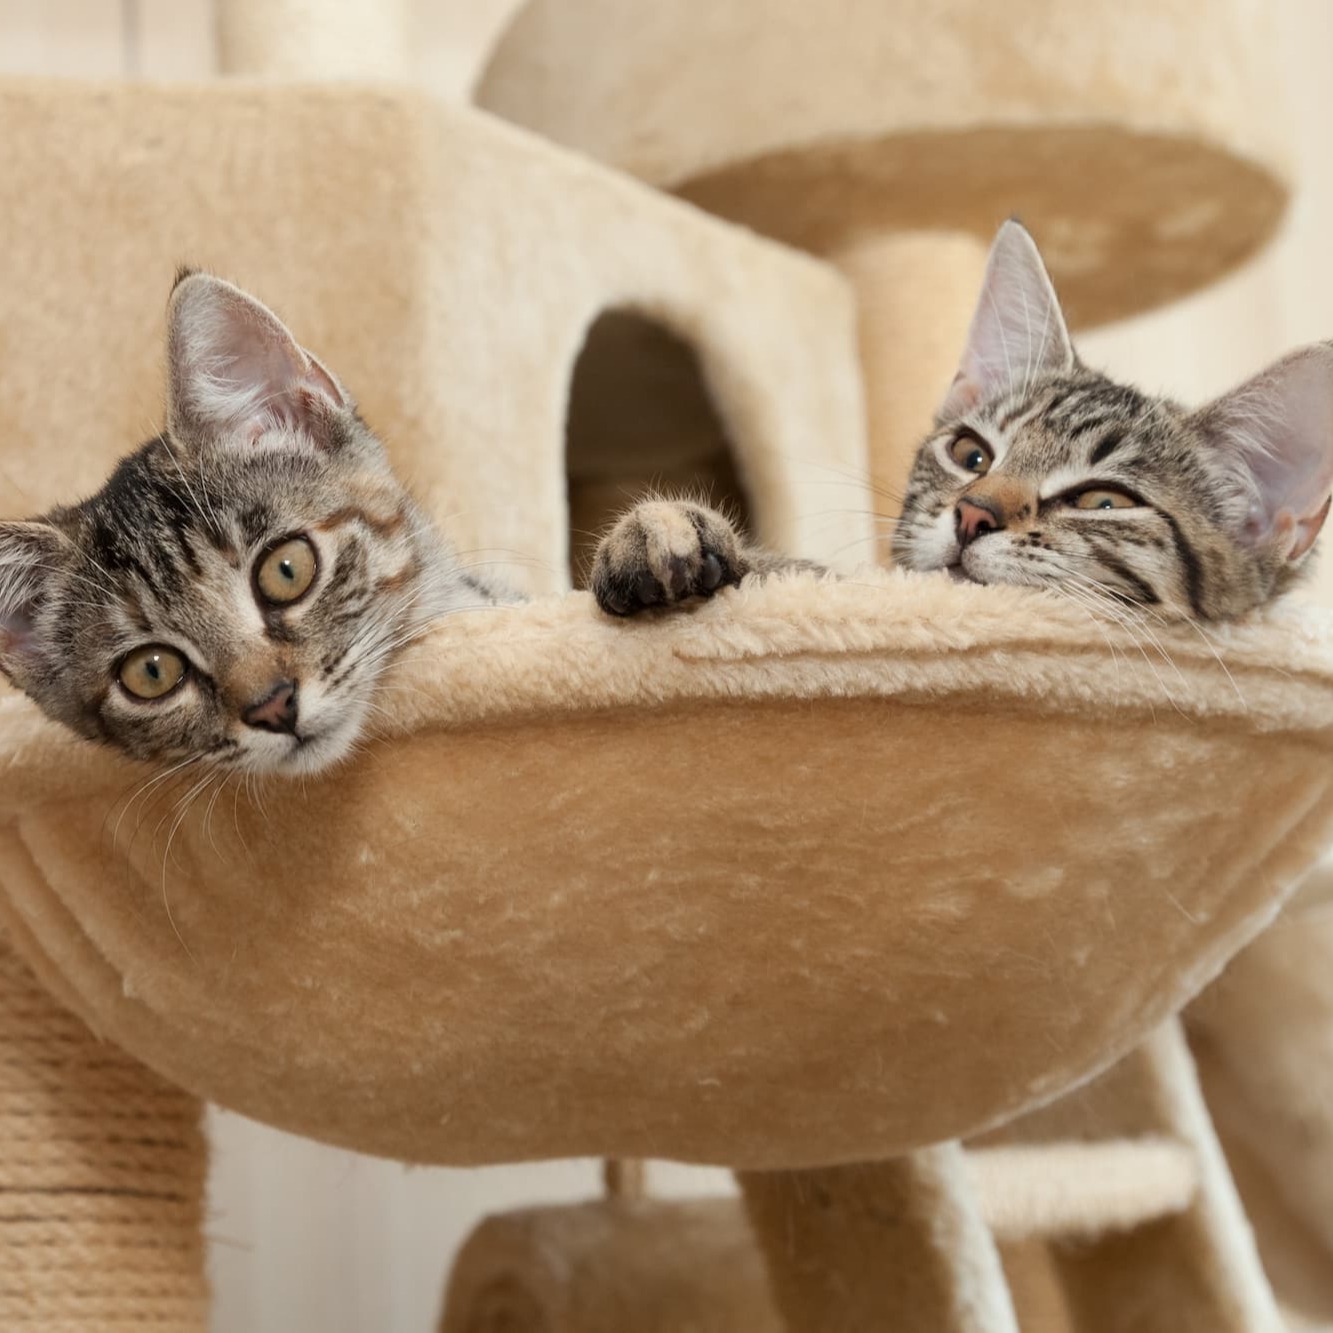 Kittens slapen samen in kattenbedje - Aveve